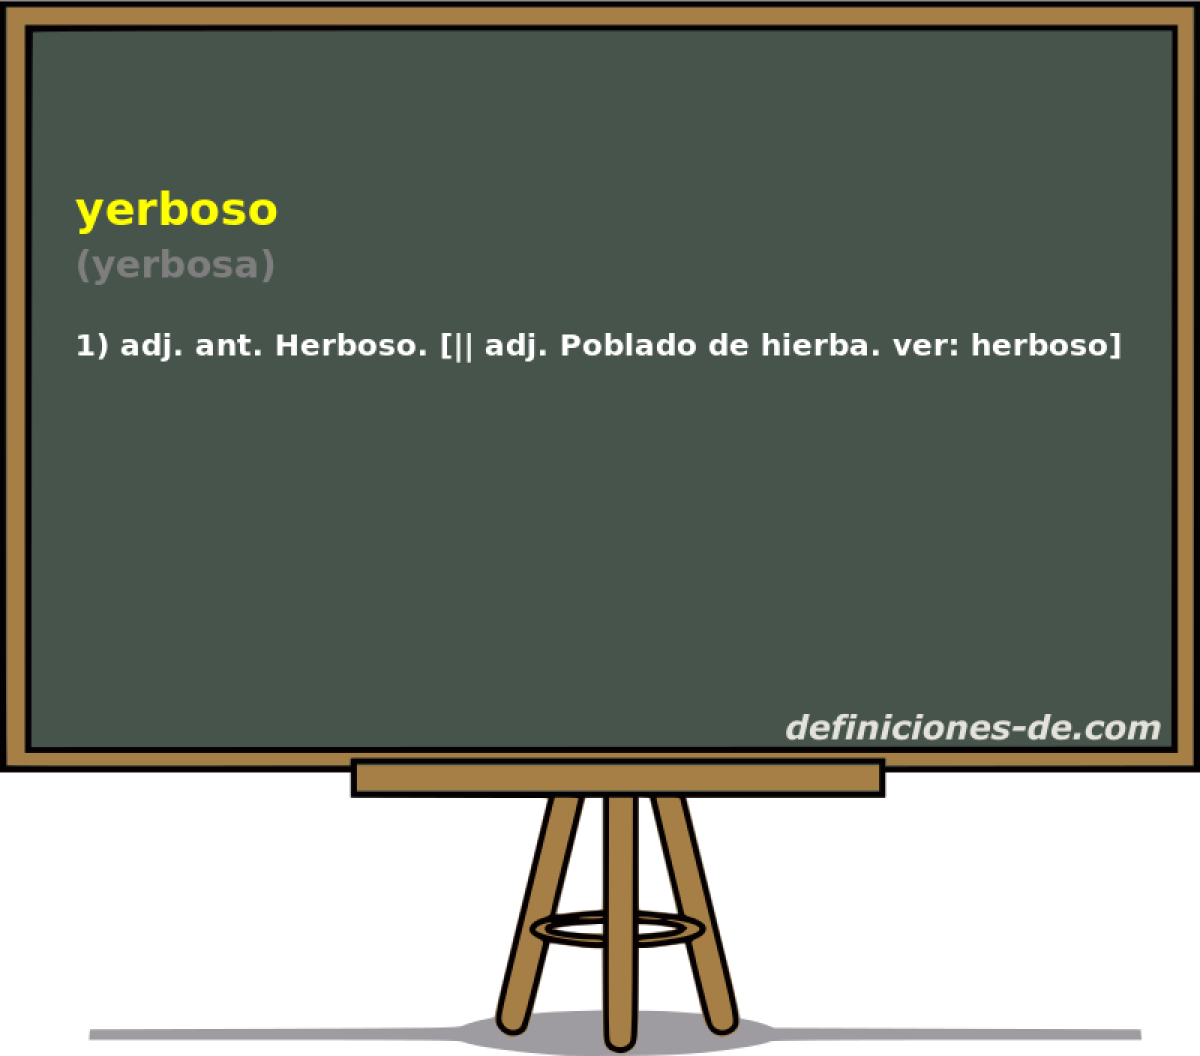 yerboso (yerbosa)